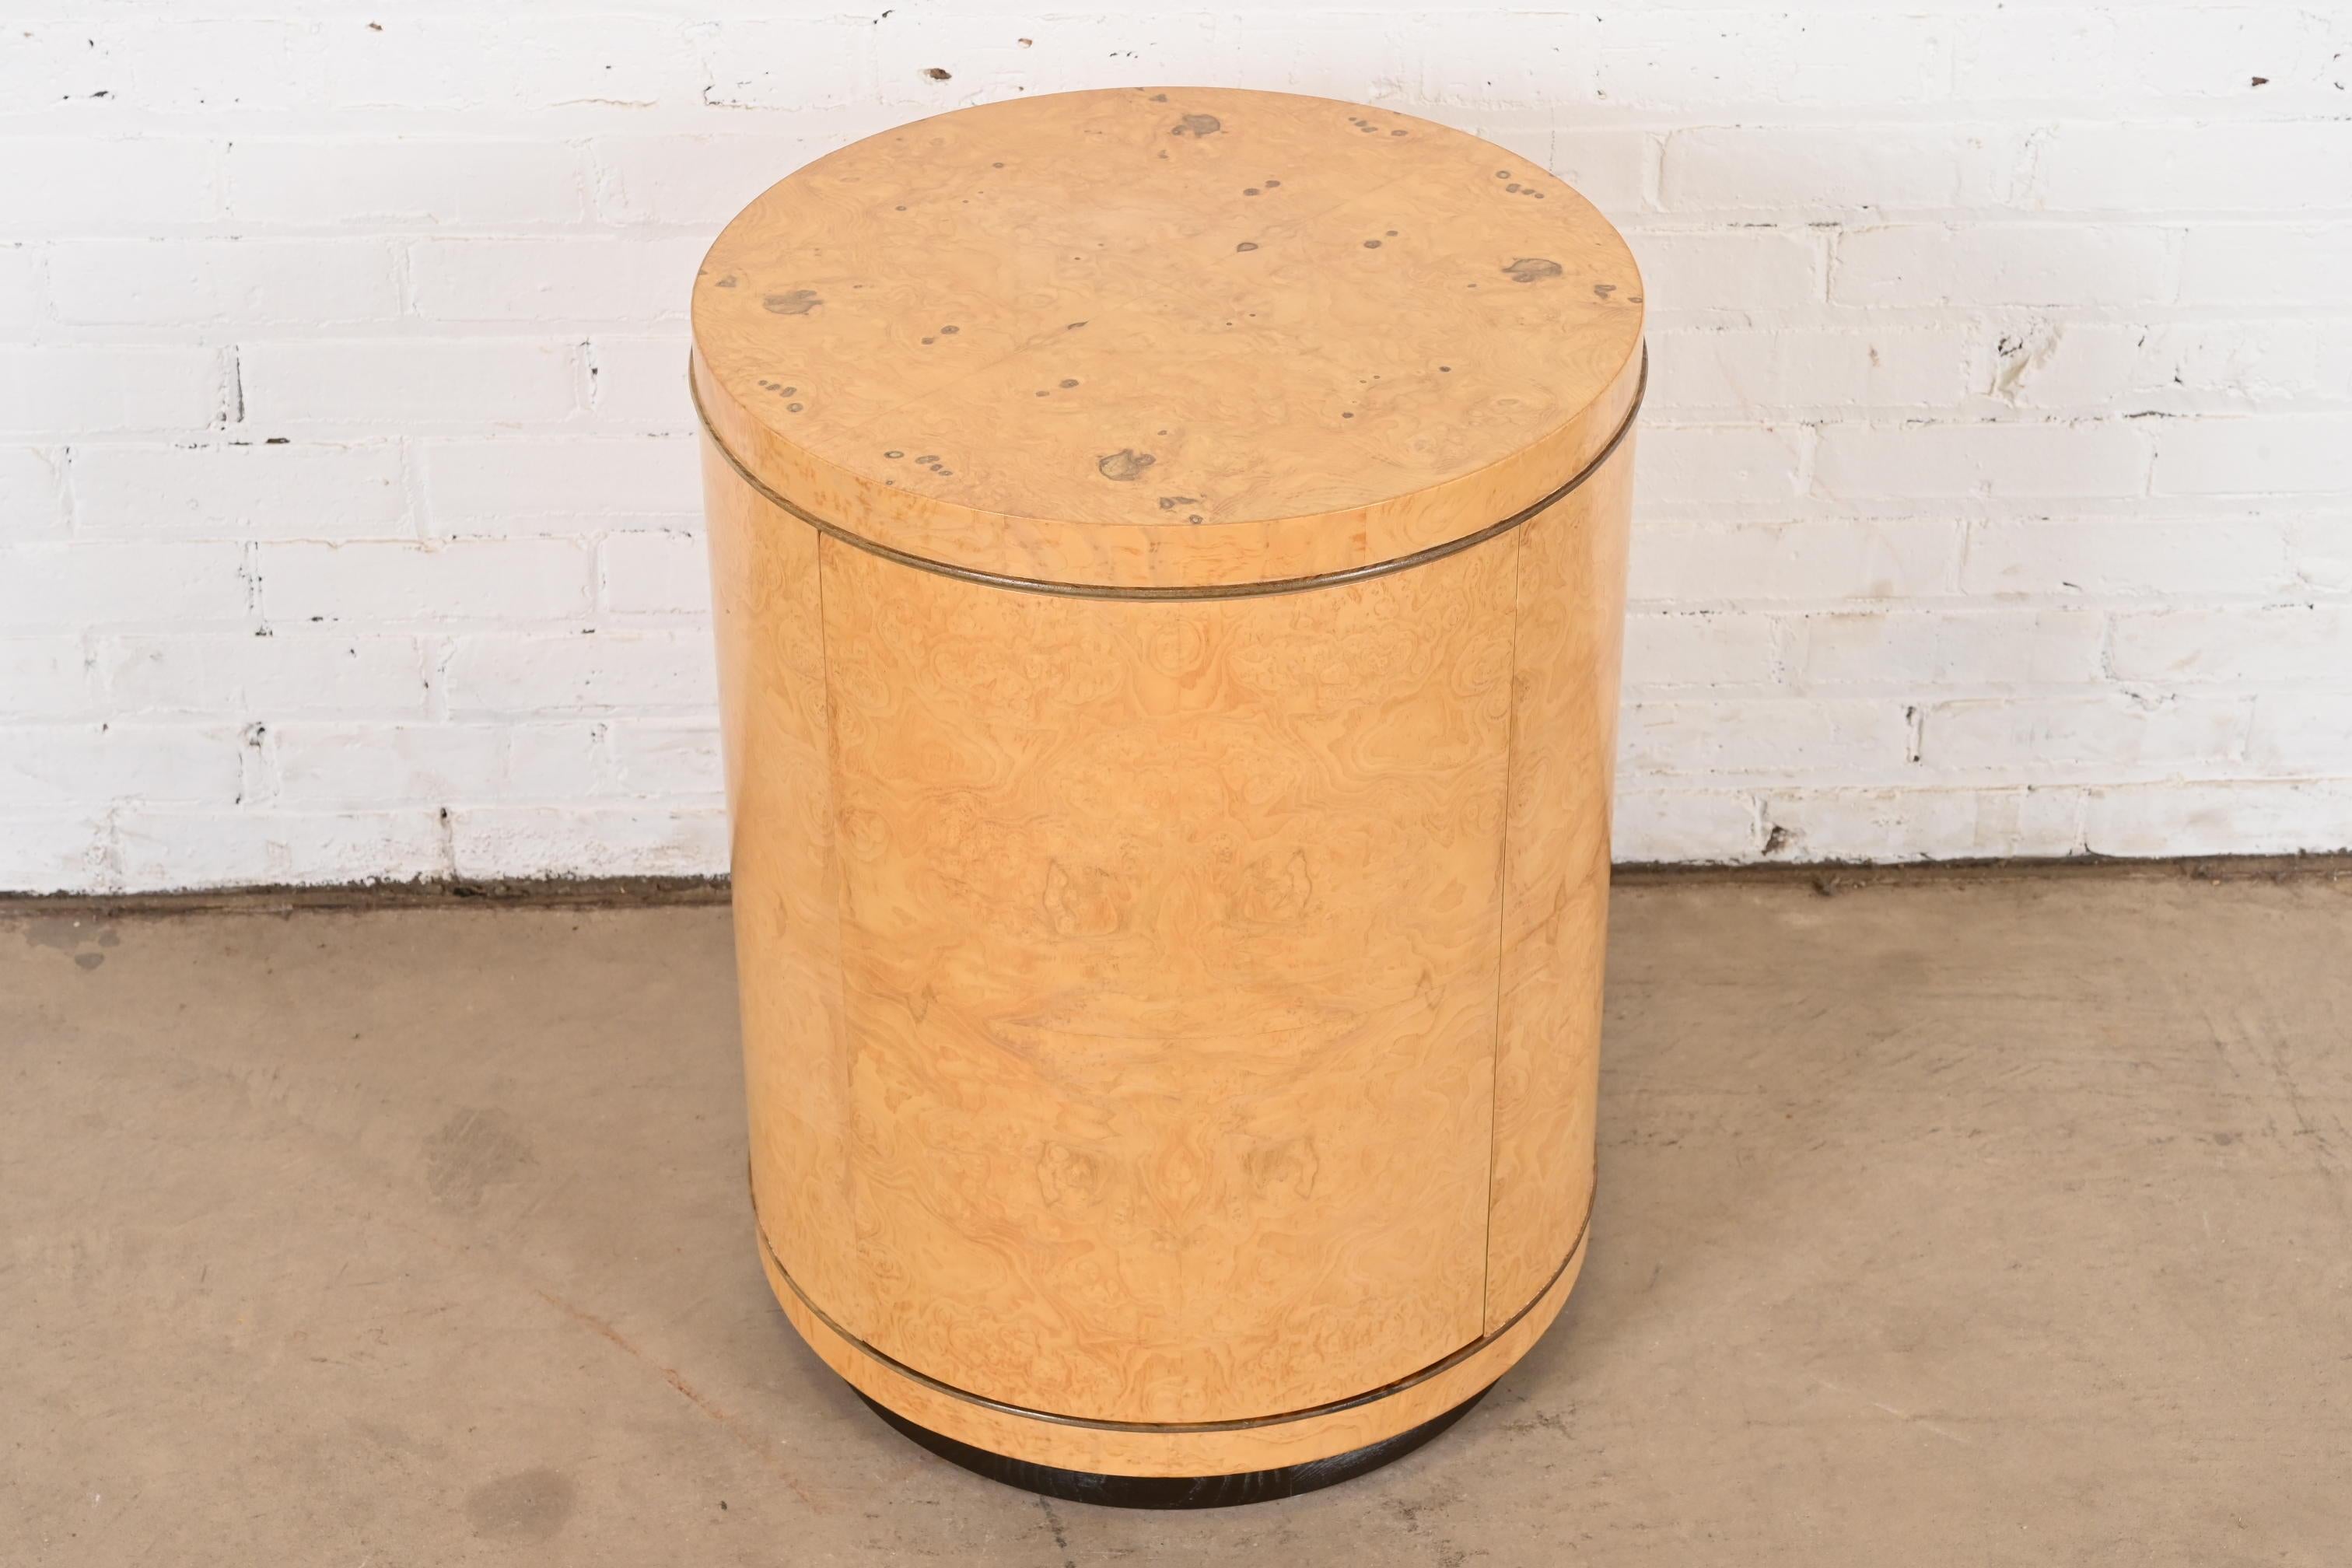 Impresionante mesa auxiliar de tambor de estilo Milo Baughman de la modernidad de mediados de siglo

Por Henredon, Colección 